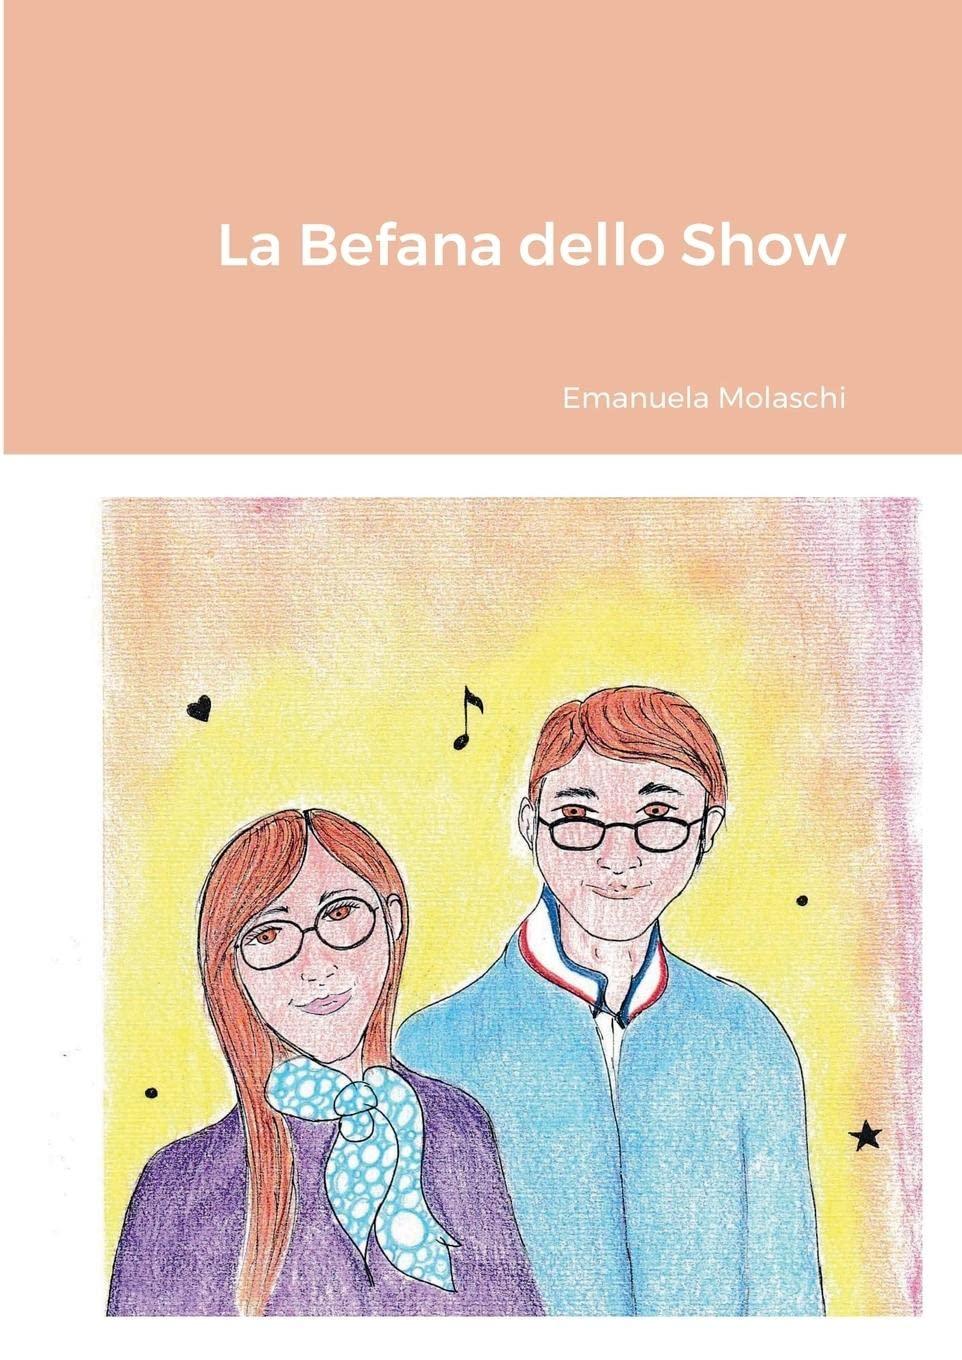 Libro "La Befana dello Show" di Emanuela Molaschi